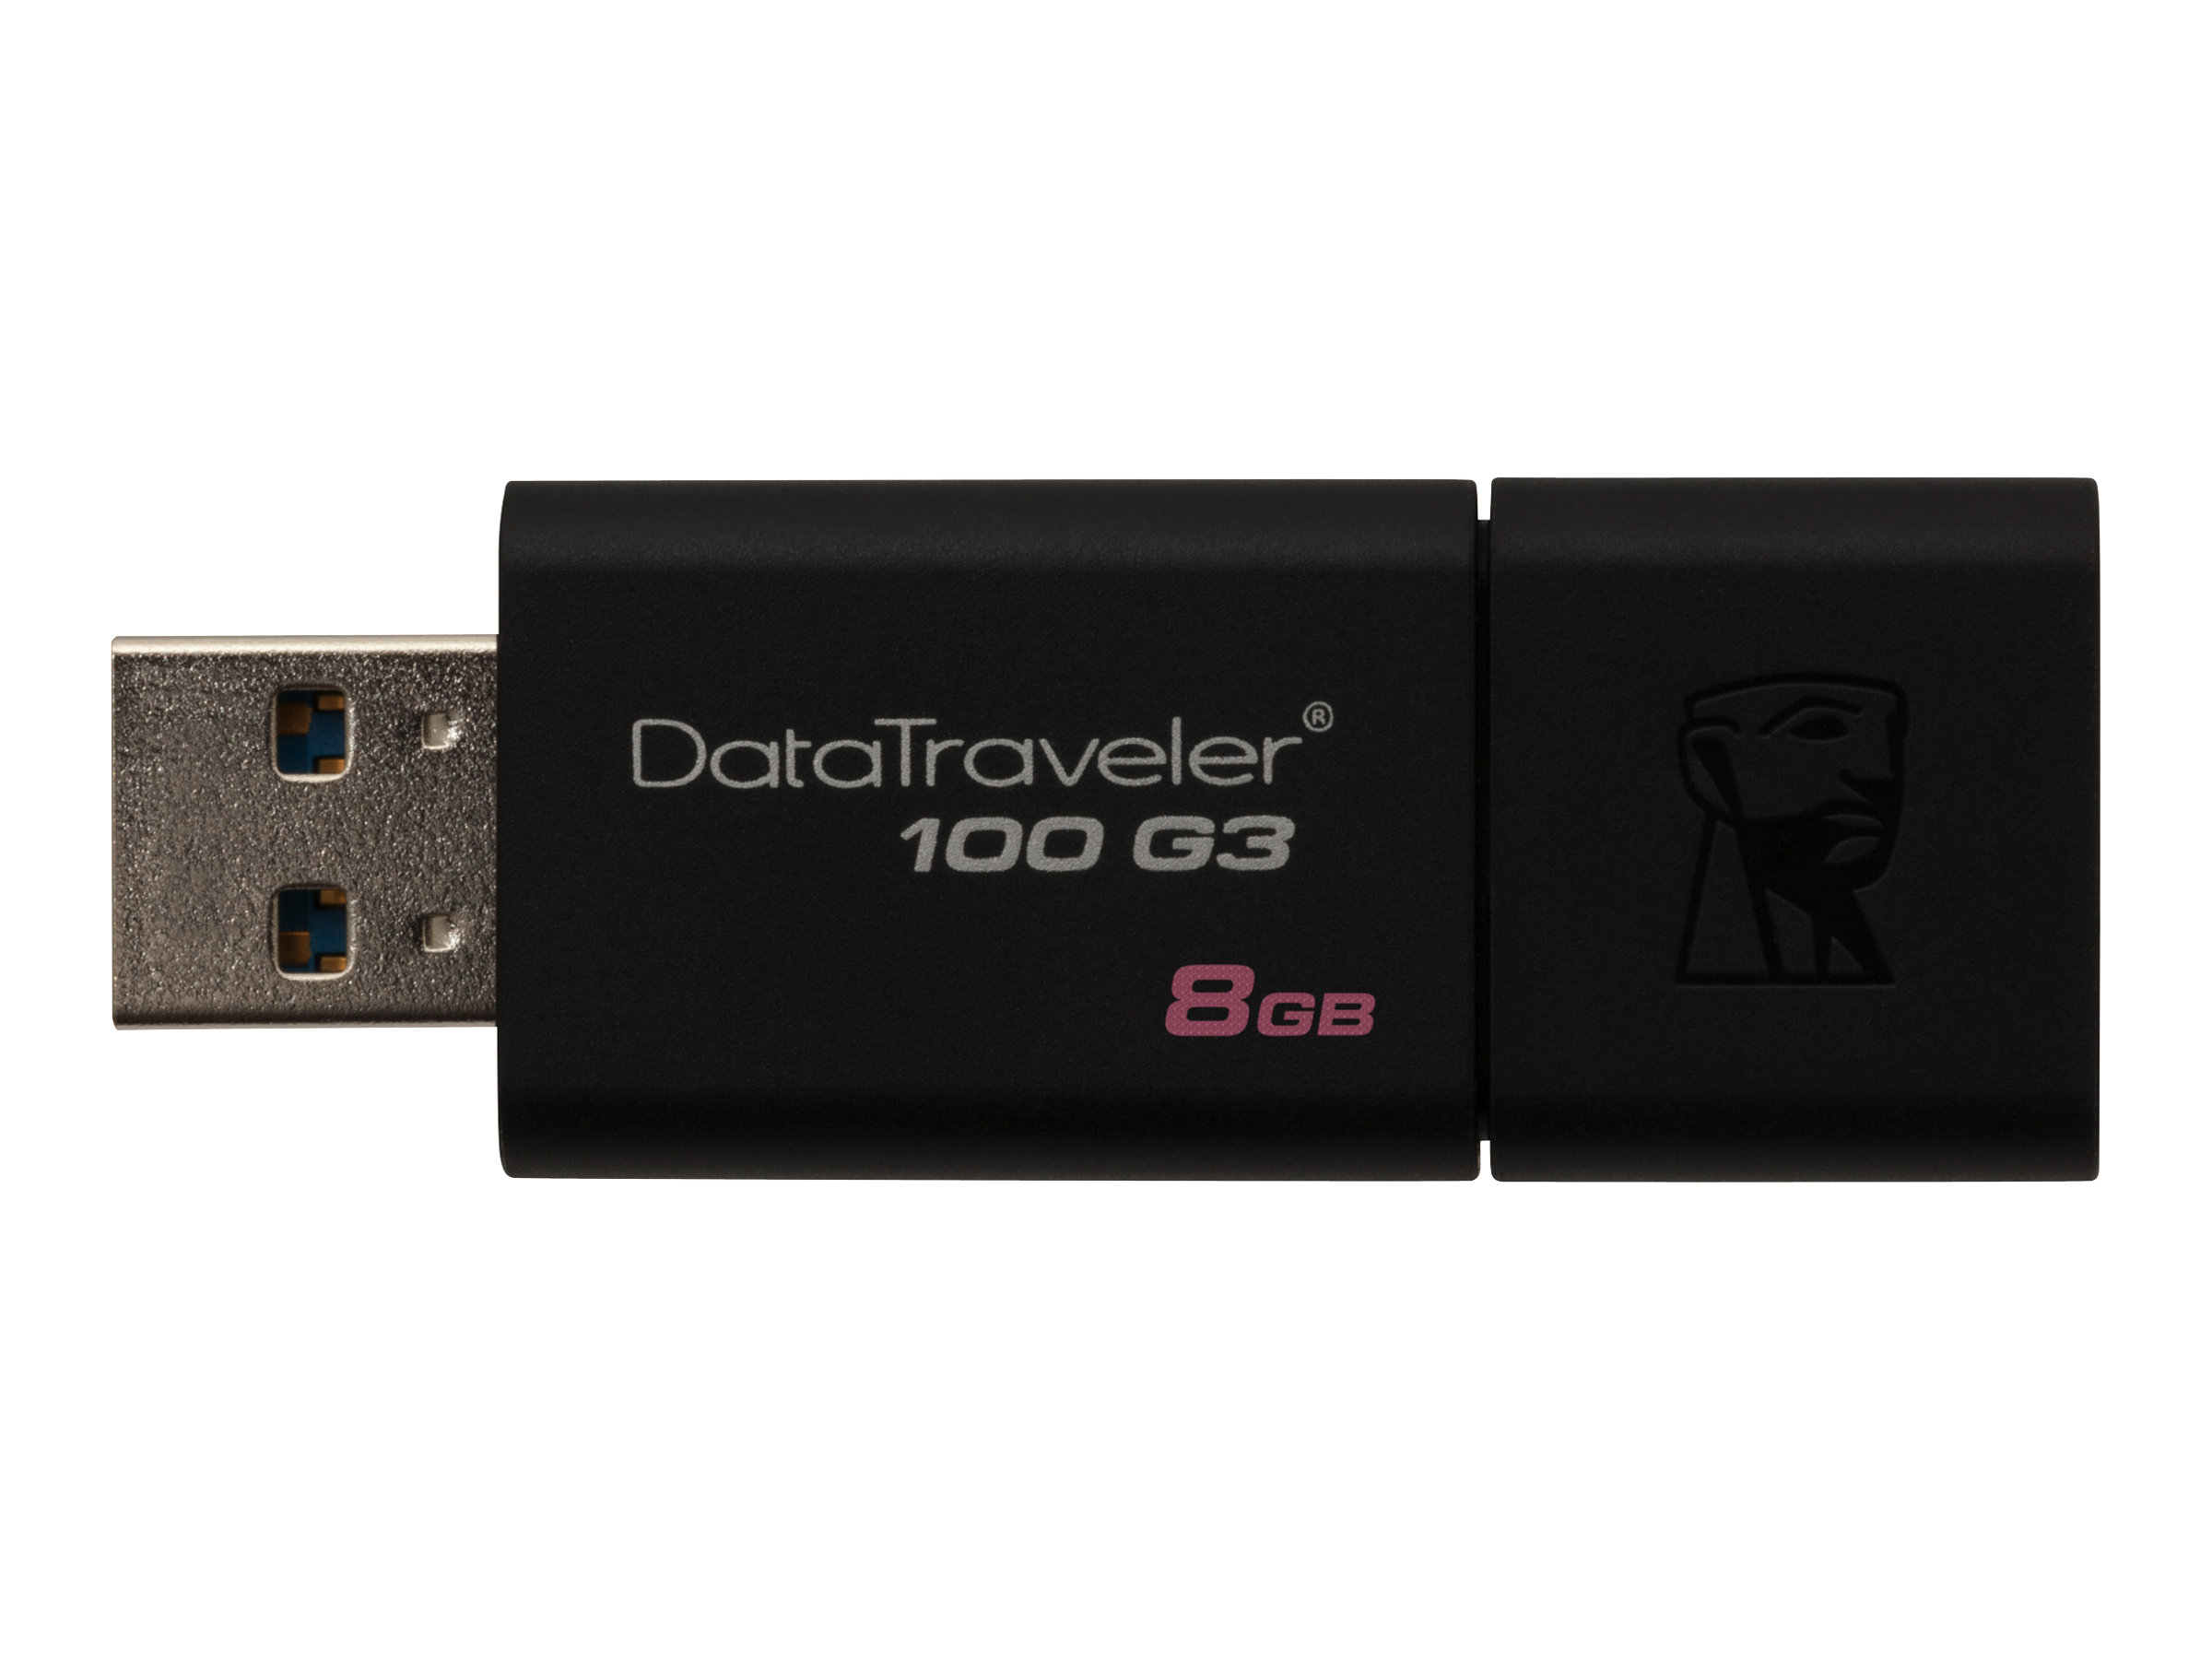 Kingston DataTraveler 100 G3 - USB flash drive - 8 GB - USB 3.0 - black - for P/N: MLWG3ER - image 1 of 5